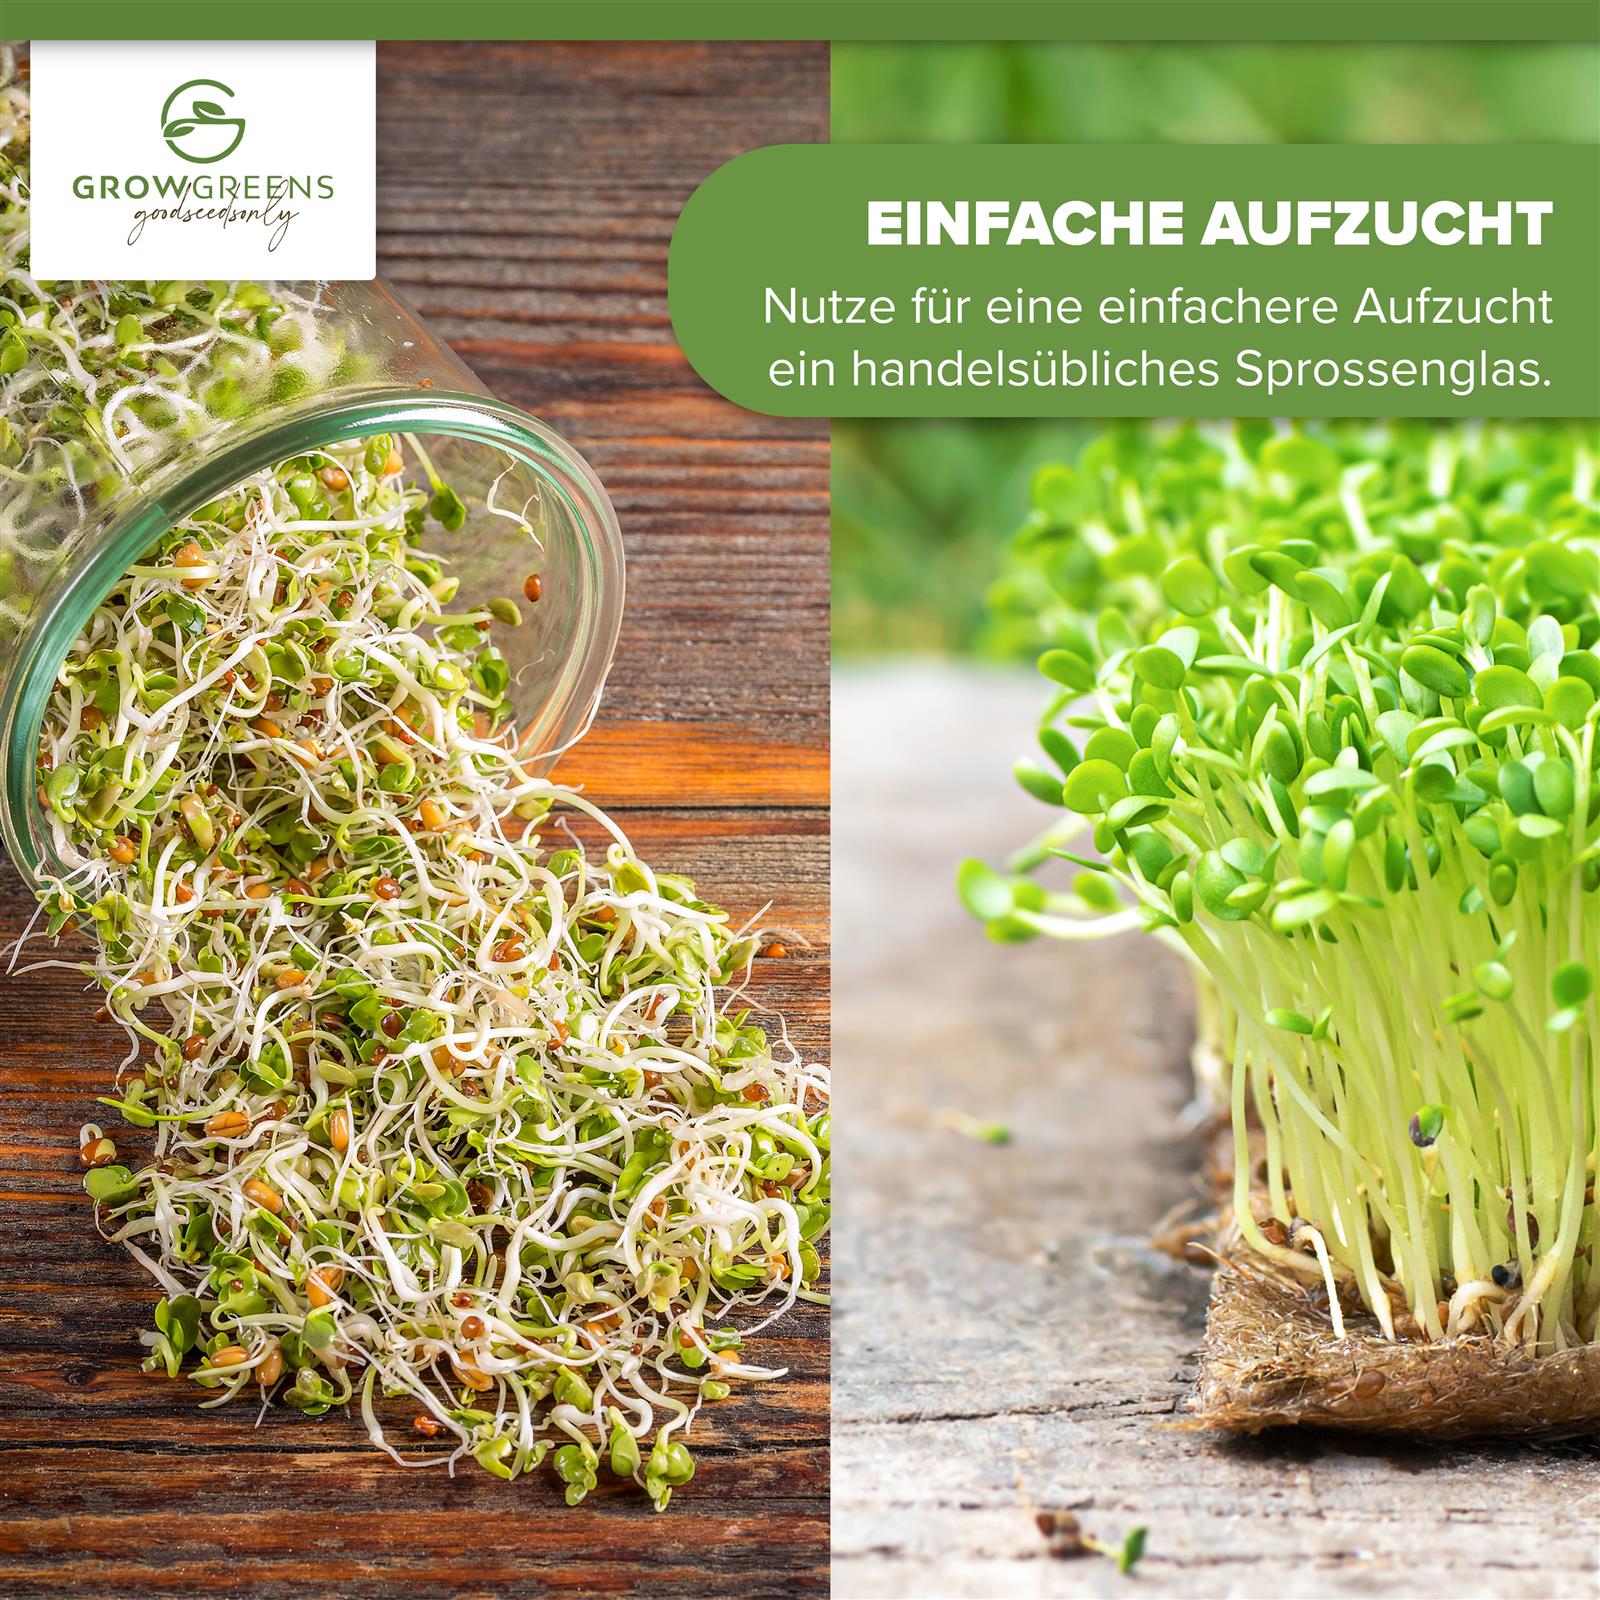 BIO Brokkoli Sprossen Samen (50g) - Microgreens Saatgut ideal für die Anzucht von knackigen Keimsprossen